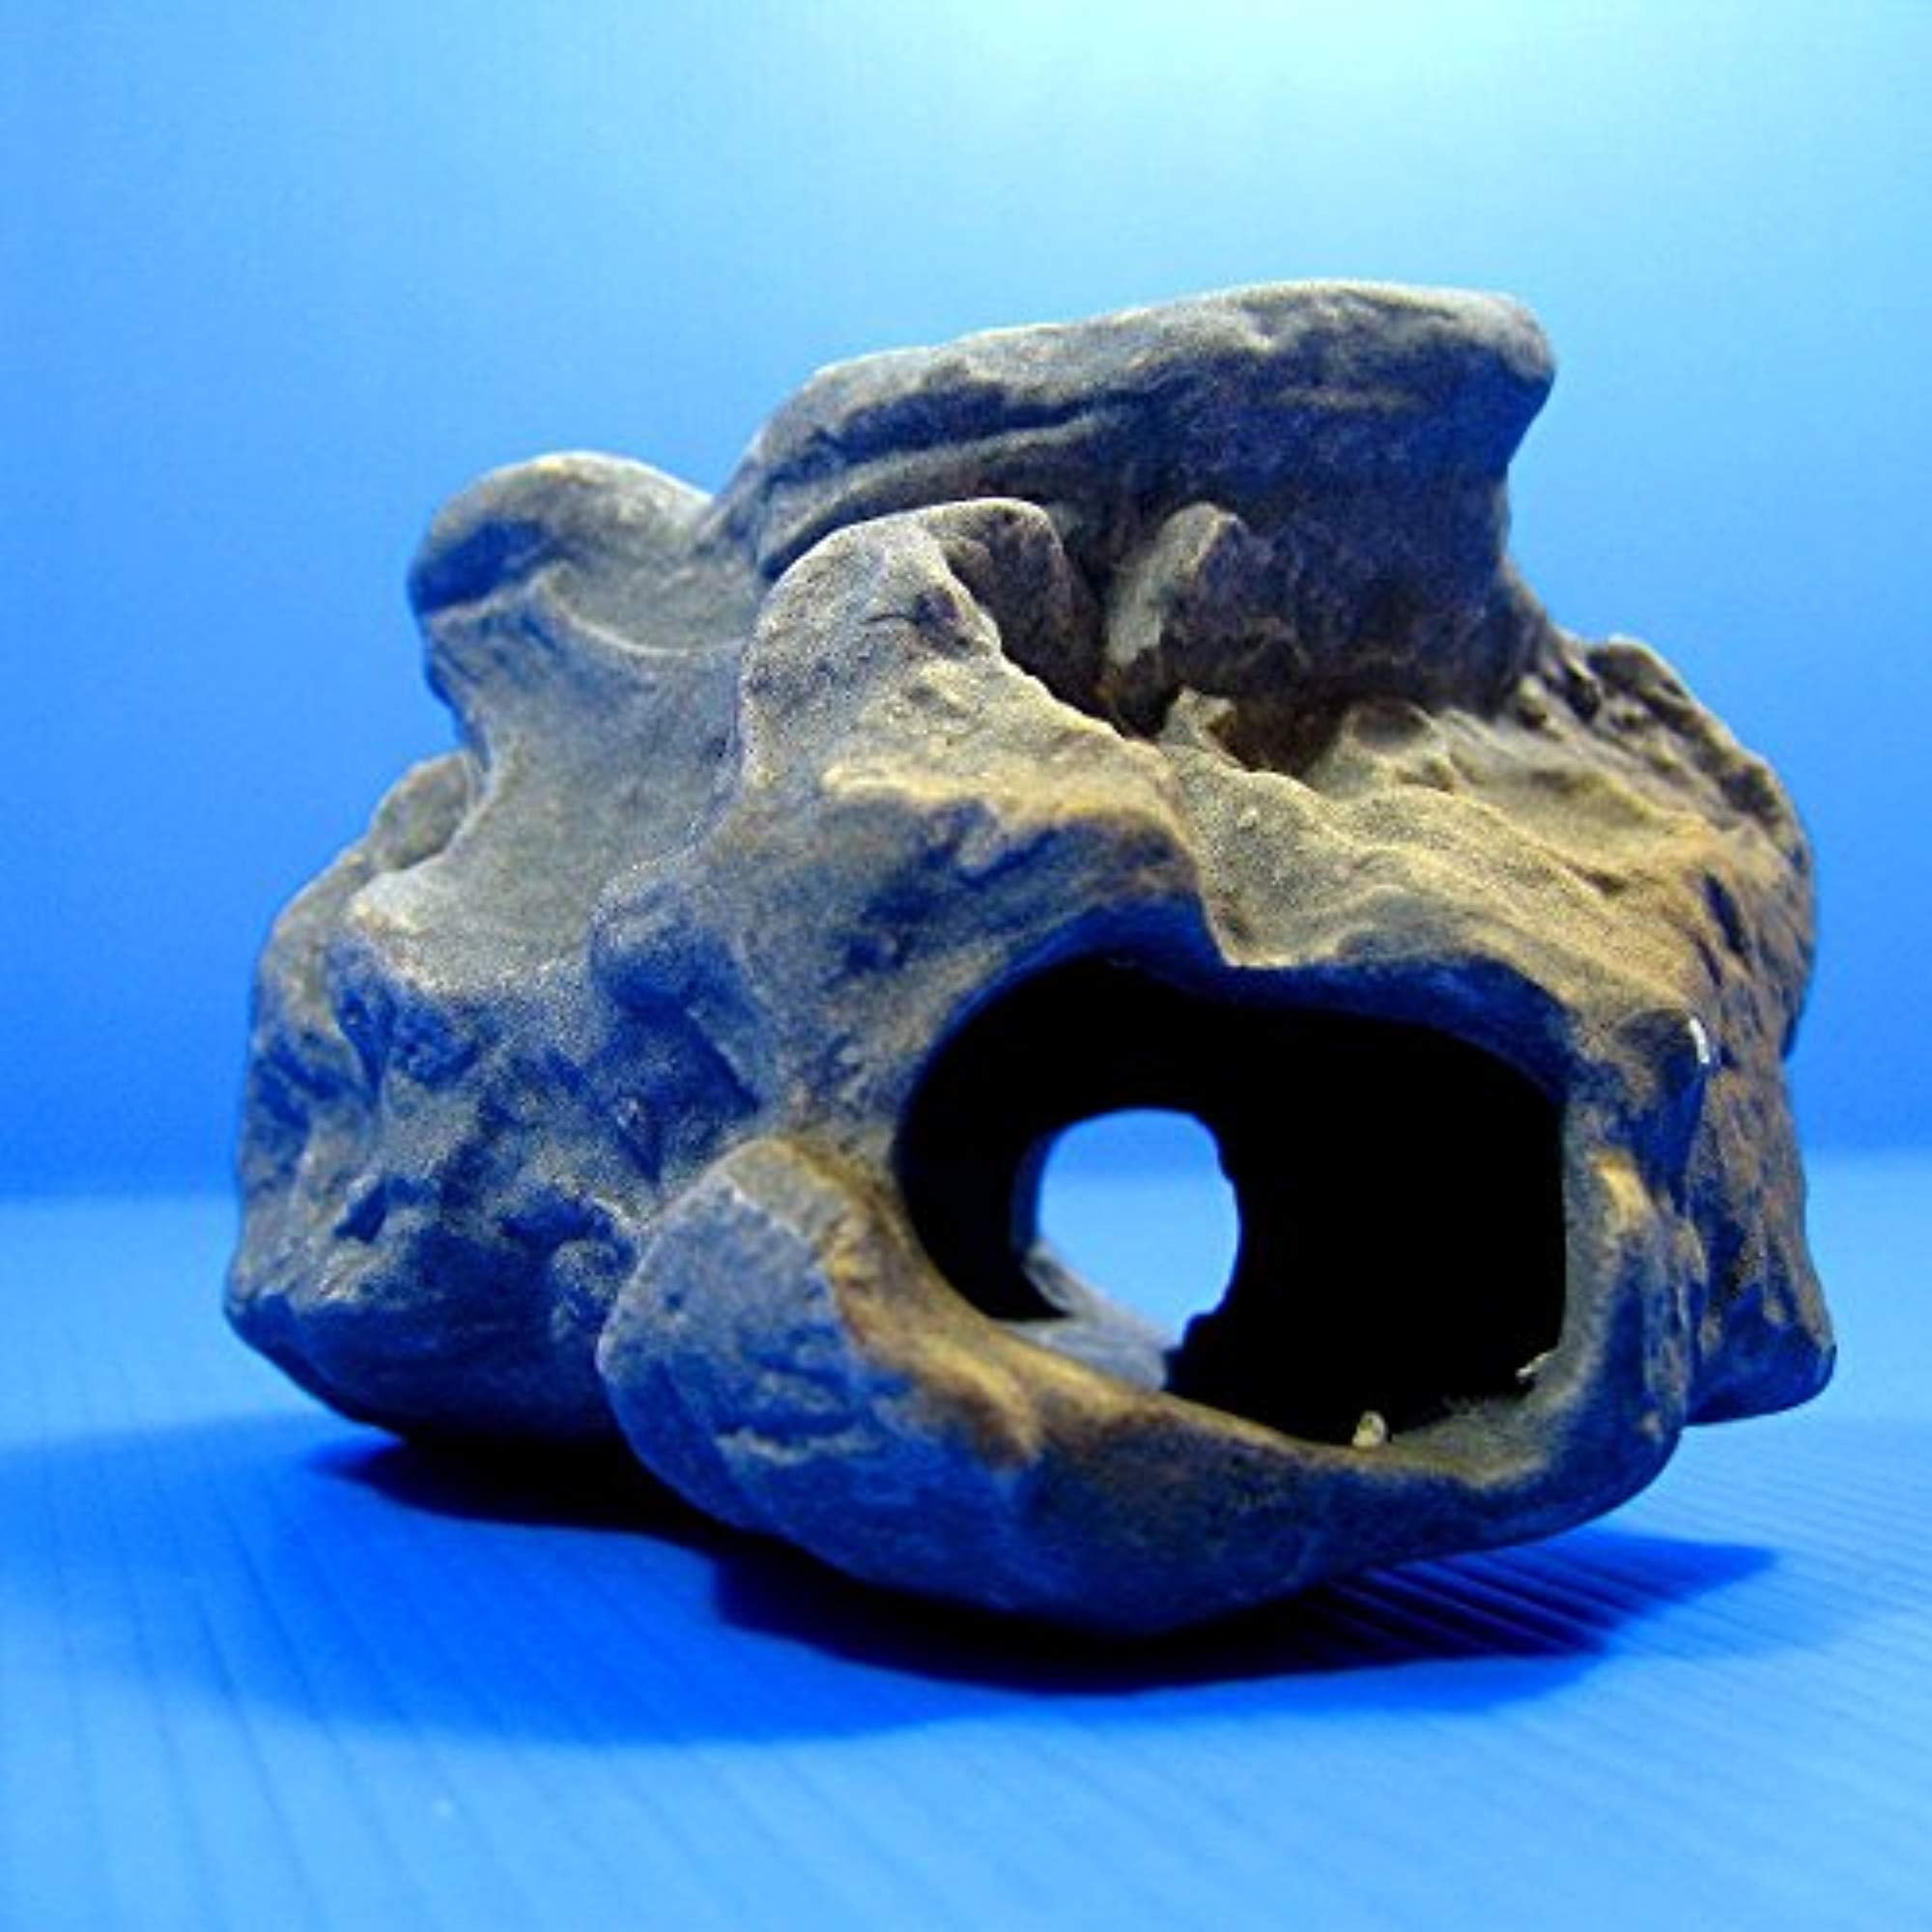 DR. MOSS Cichlid Stone Ceramic Aquarium Rock Cave Decor Fish Tank F923C ... Moss On Rocks In Aquarium